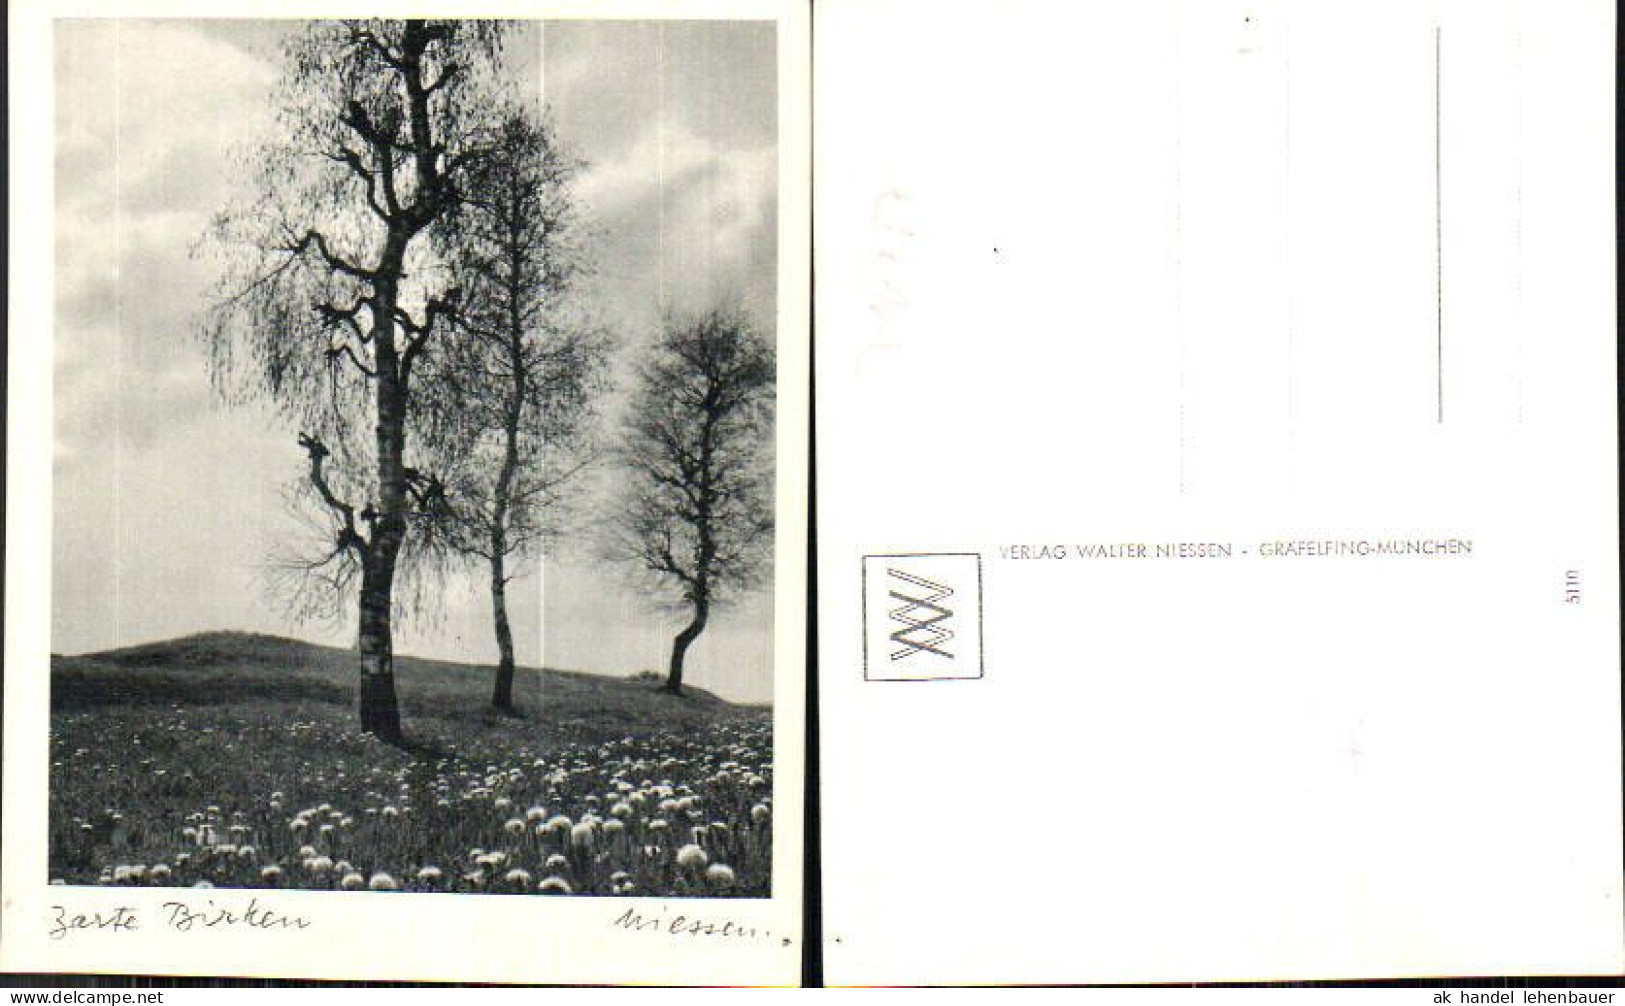 716487 Verlag Walter Niessen Gräfelfing München Birken Bäume - Photographie